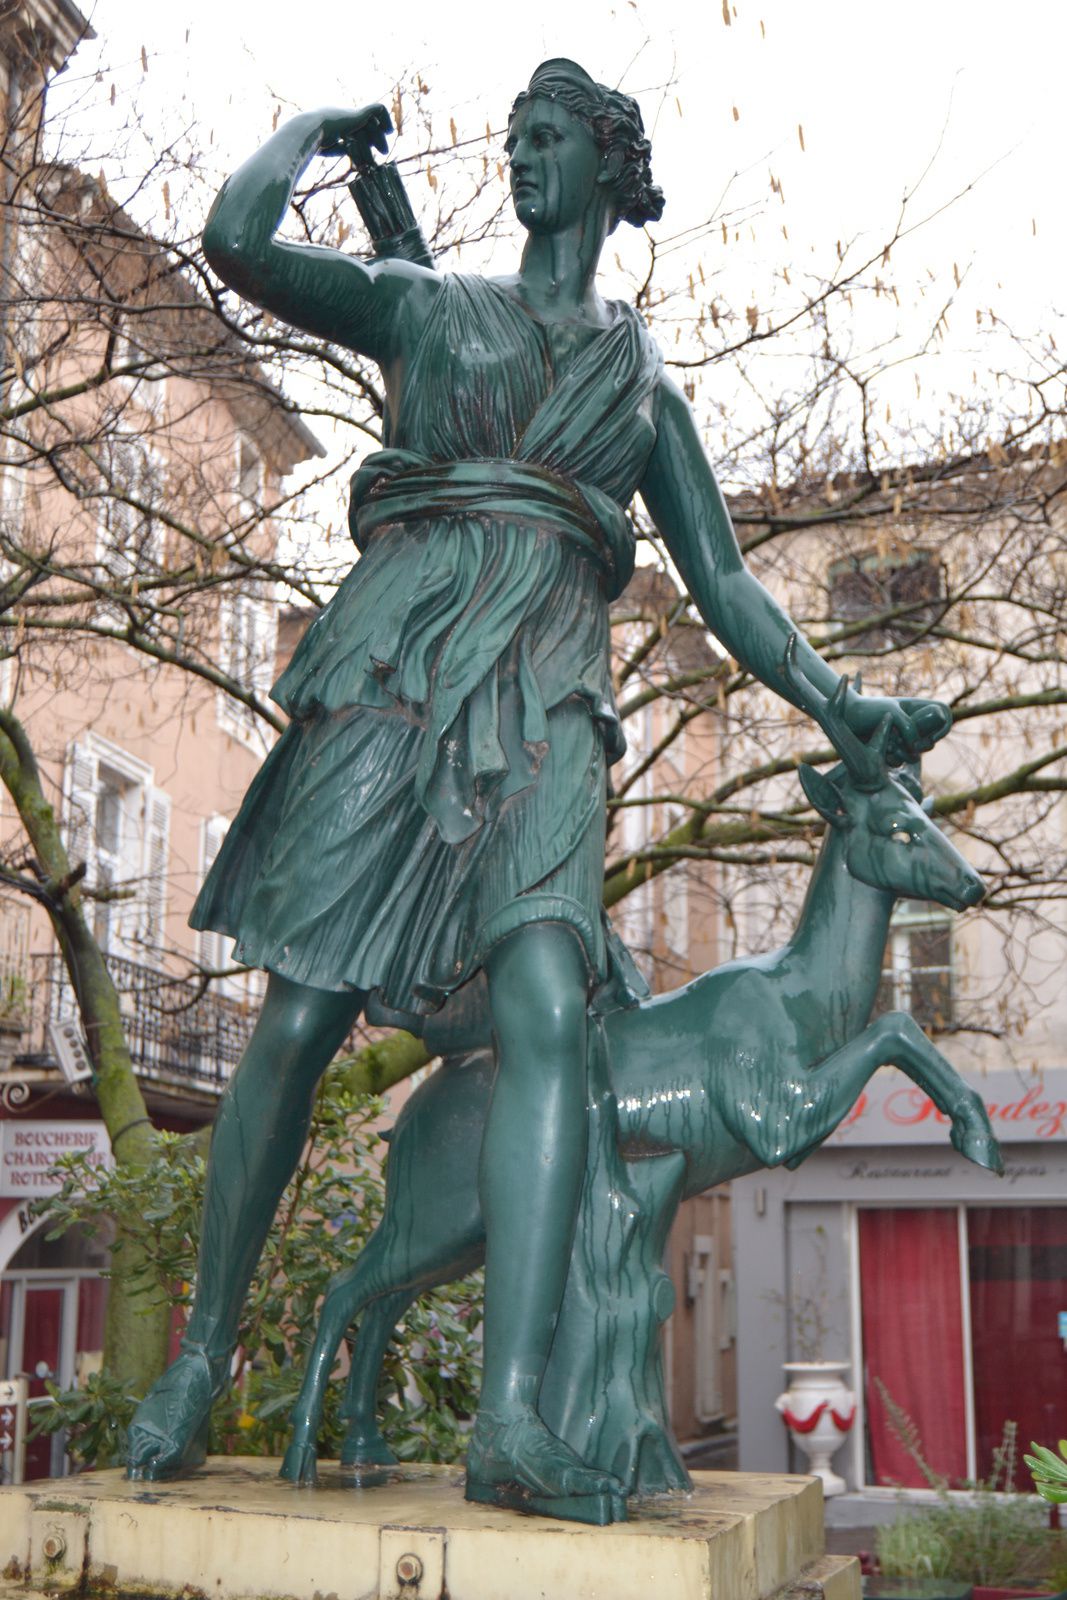 La statue de Diane chasseresse est placée sur un piédestal en fonte carré pourvu d’un mascaron en forme de lion qui montre qu’il s’agit d’une ancienne fontaine. Cette statue, copie d’antique, est présentée sous la forme d’une fontaine 